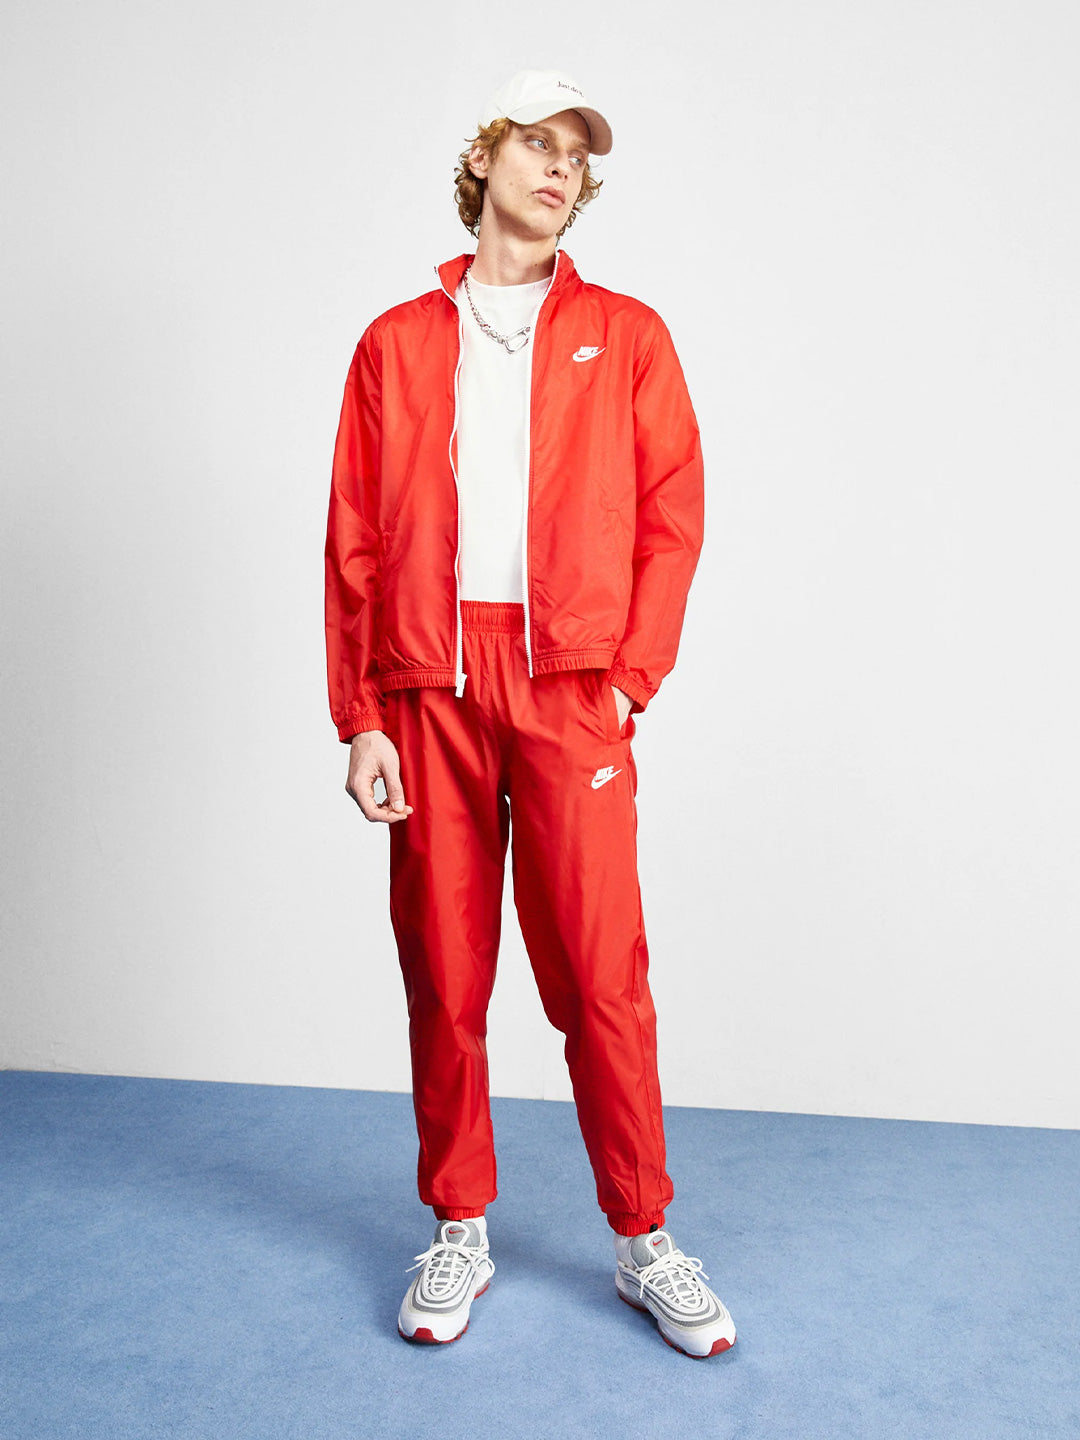 Nike coordinato rosso giacca con zip e pantaloni tuta